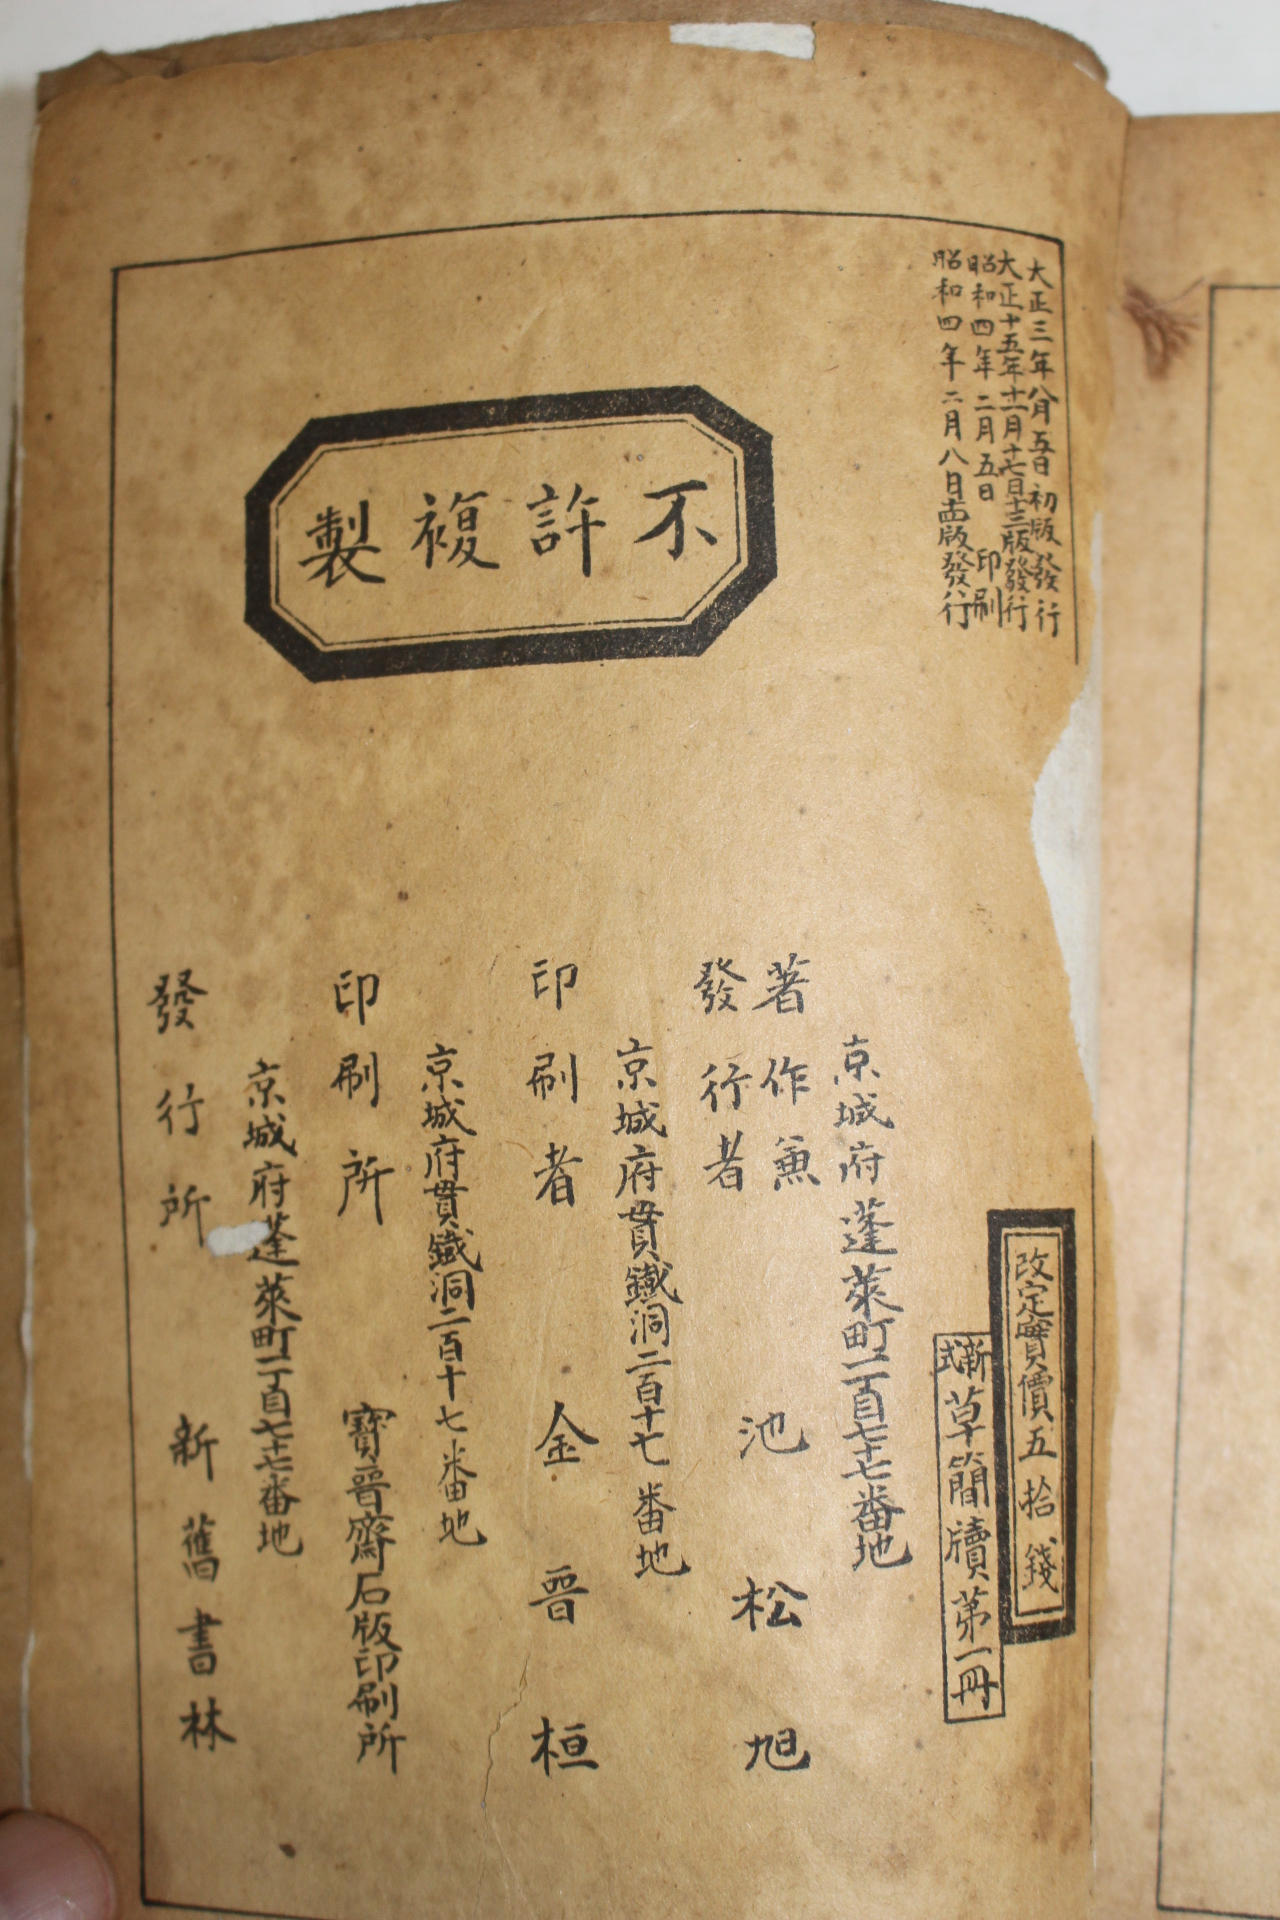 1929년 경성간행 신식 초간독(草簡牘) 권1